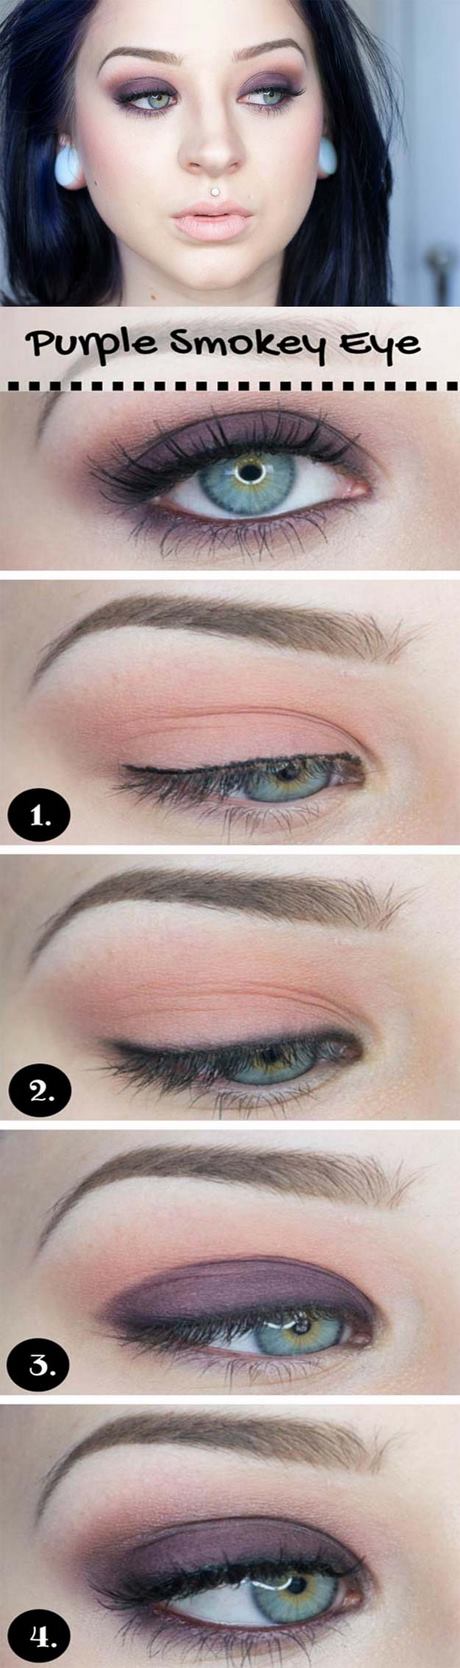 wedding-eye-makeup-tutorial-08_4 Handleiding voor huwelijksoog make-up